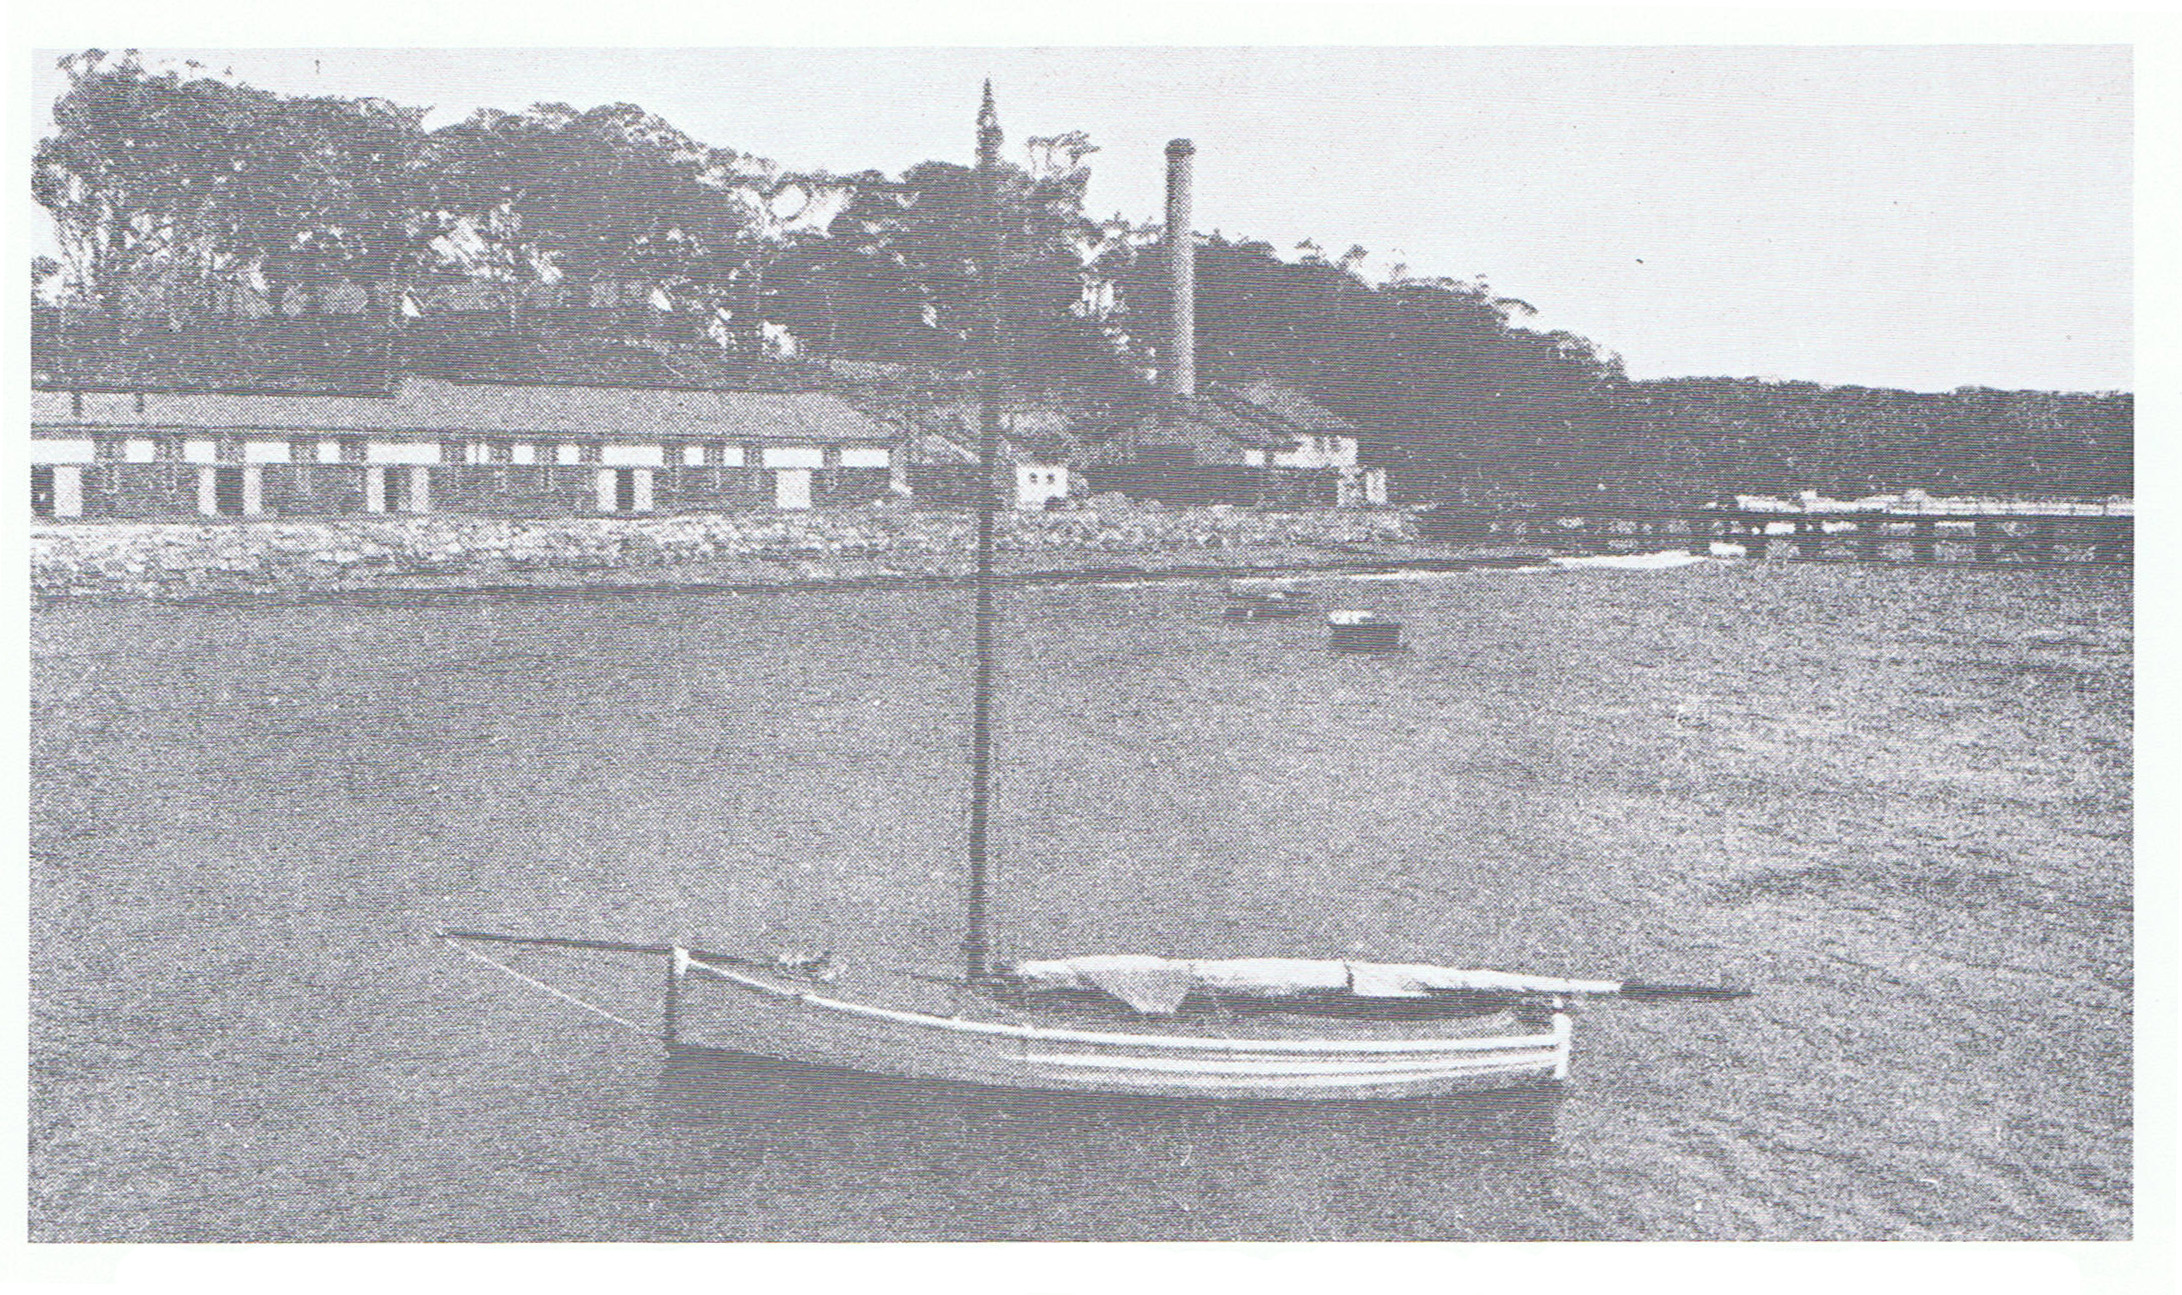  RANC, Jervis Bay 1913.